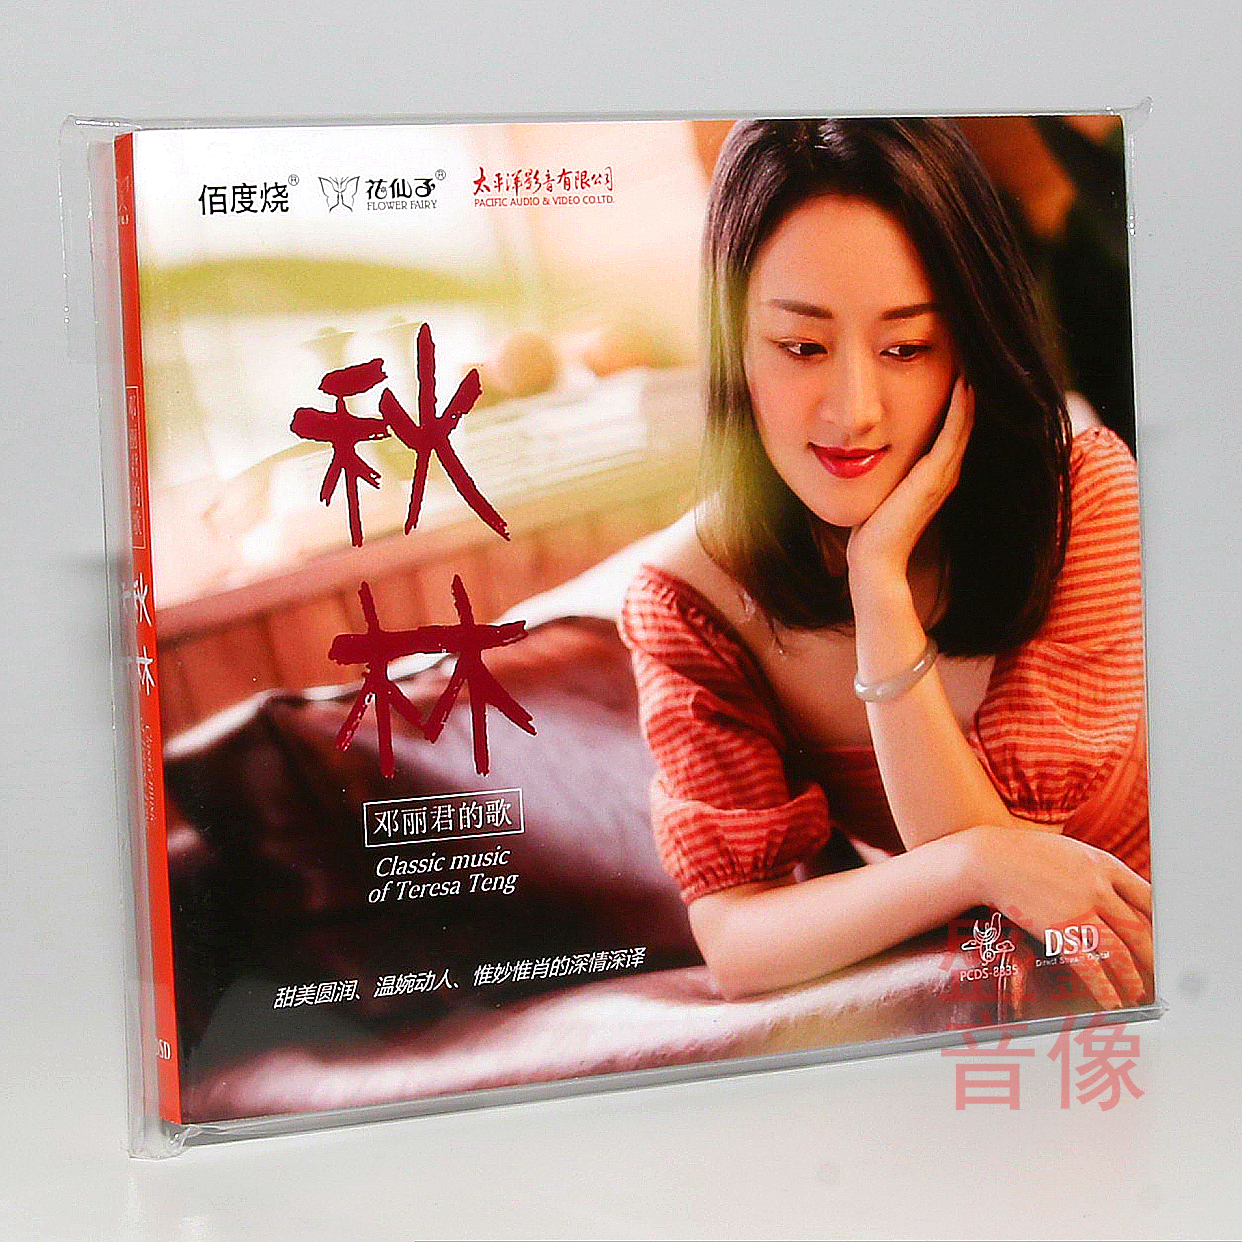 花仙子唱片 秋林 邓丽君的歌 DSD 1CD 甜美女声发烧录音全新专辑